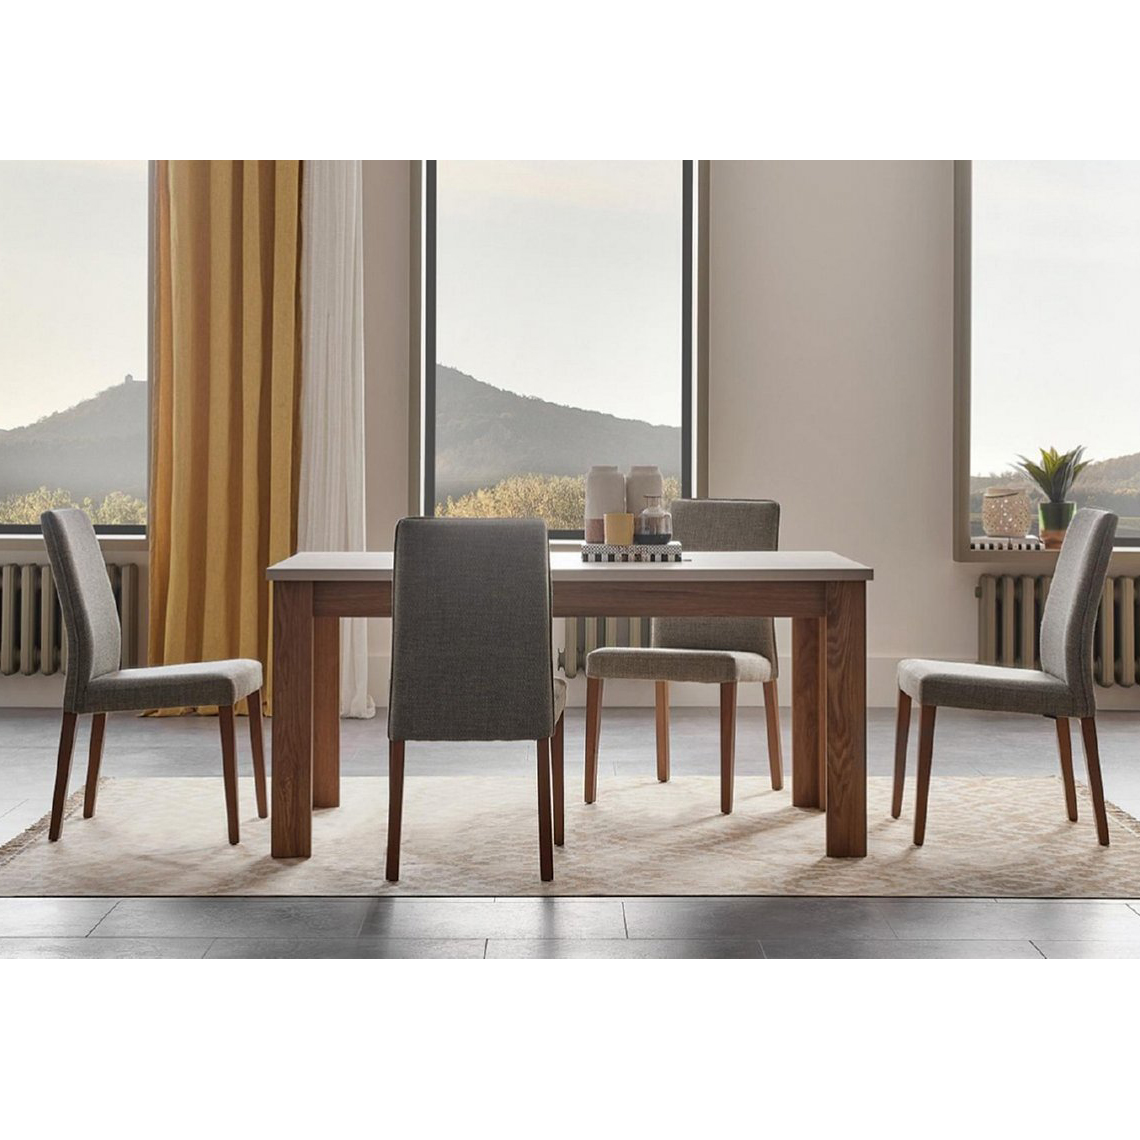 Стол обеденный Enza Home Loreto, прямоугольный, раскладной, размер 160(200)х90х77 смEH57546